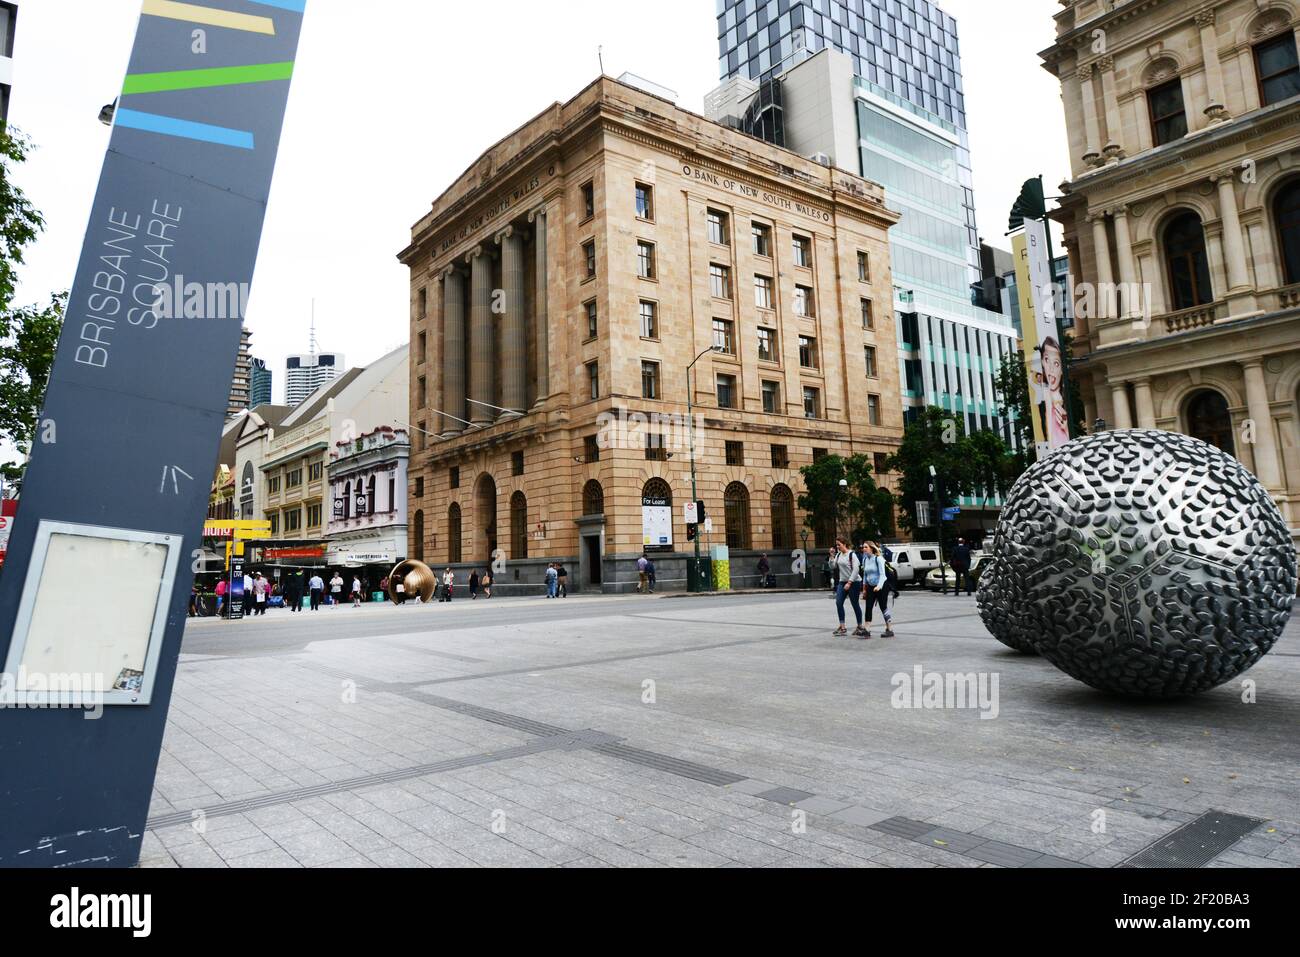 Vapor por Donna Marcus - esculturas en forma de esfera de diferentes  tamaños están esparcidas por el Reddacliff Place y Brisbane Square,  Brisbane, Australia Fotografía de stock - Alamy